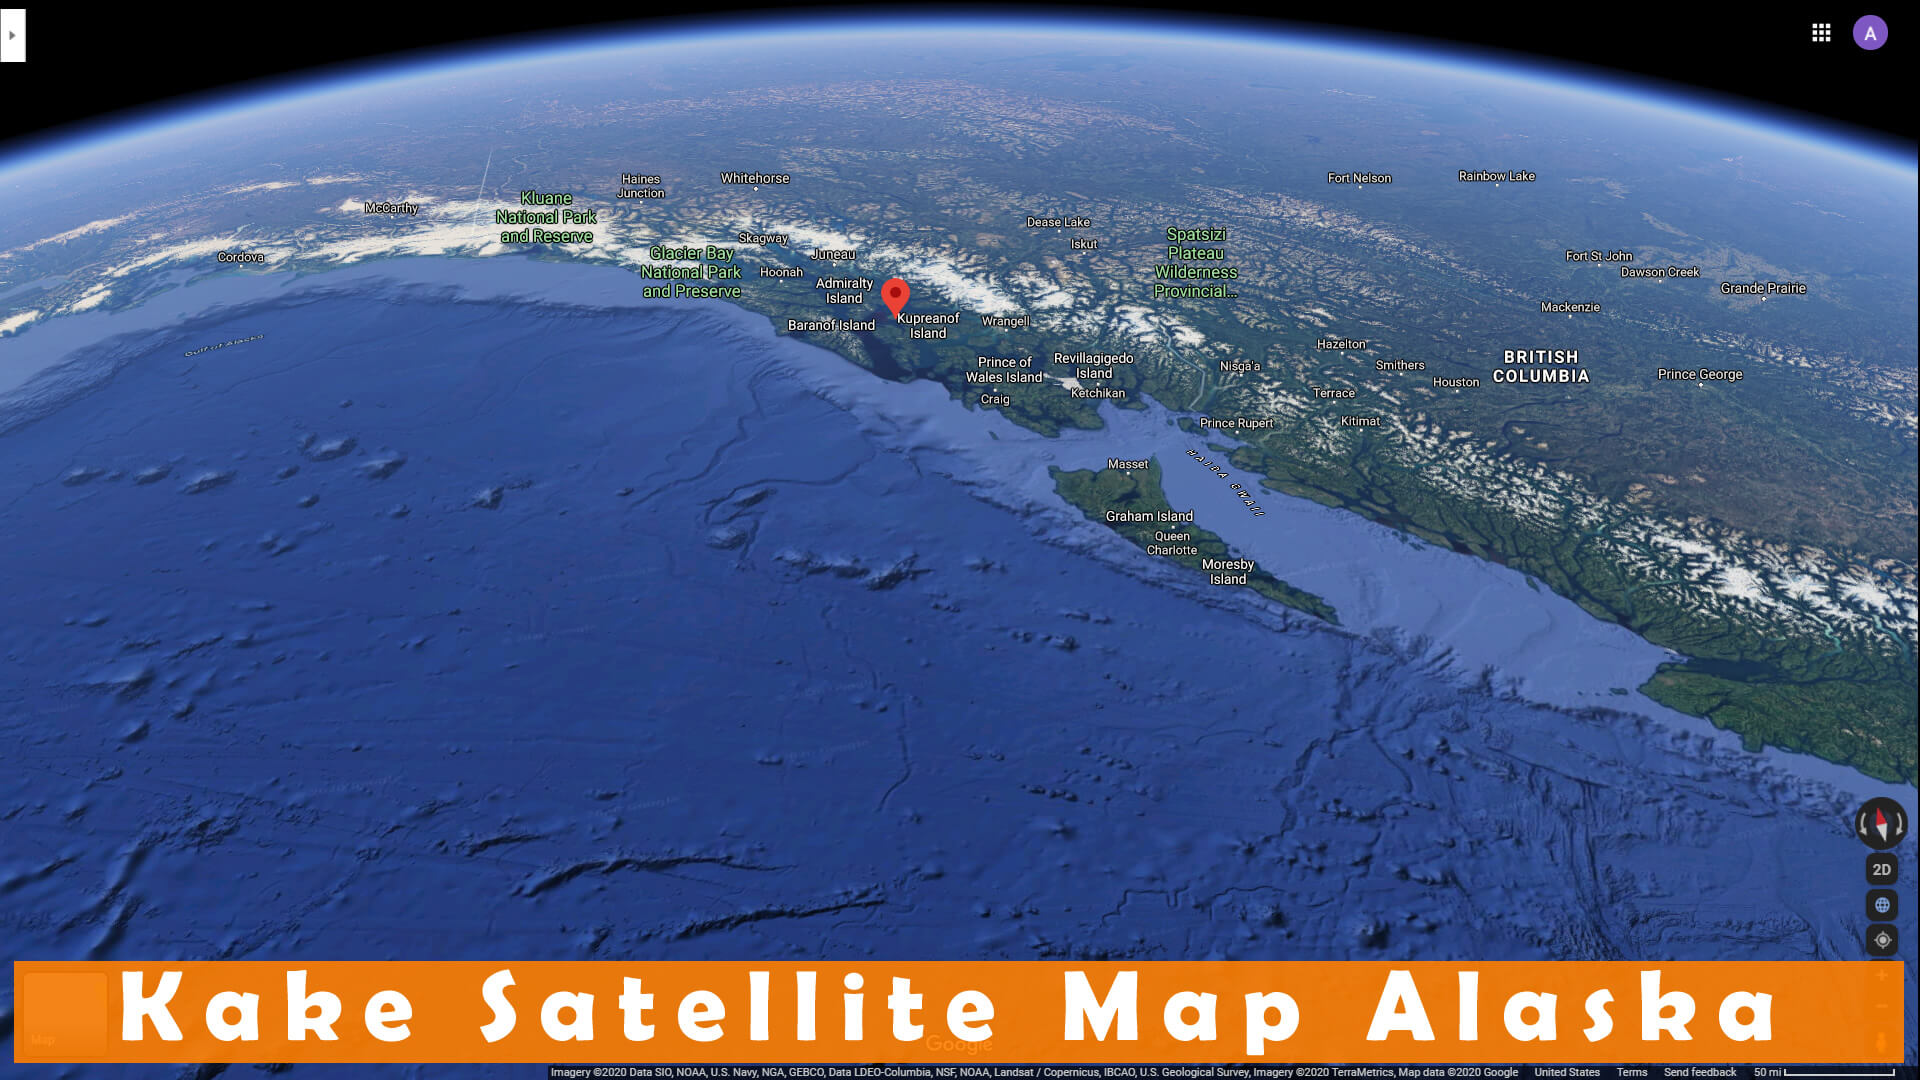 Kake Satellite Map Alaska